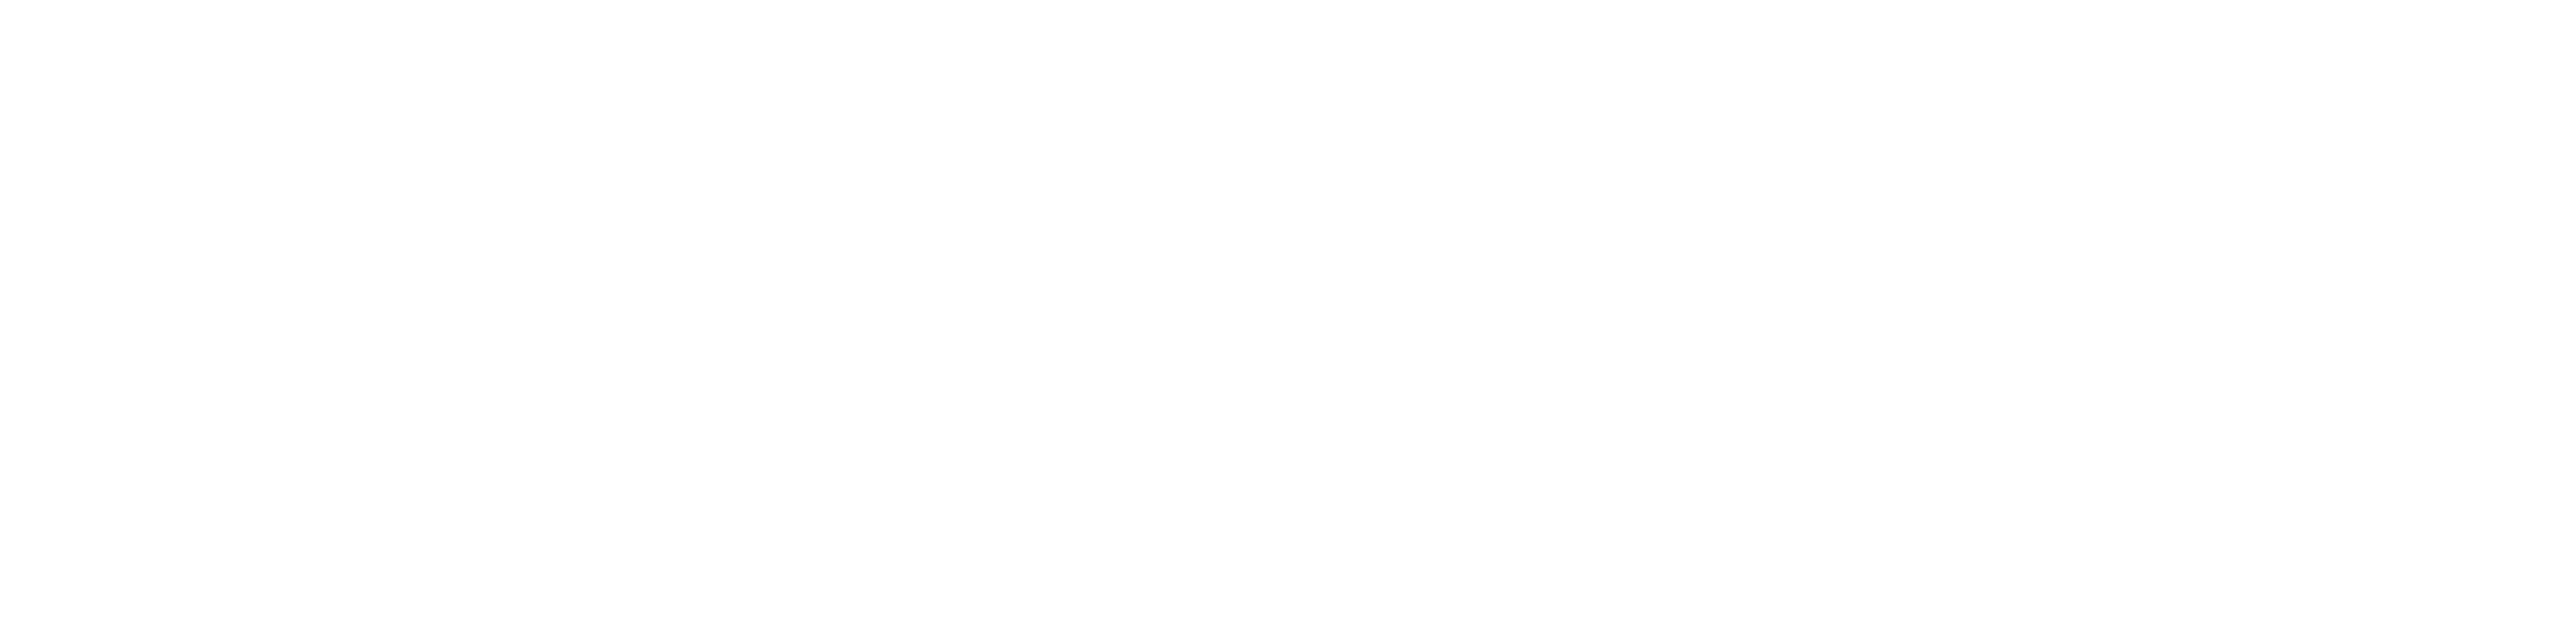 Heroic Music Group logo